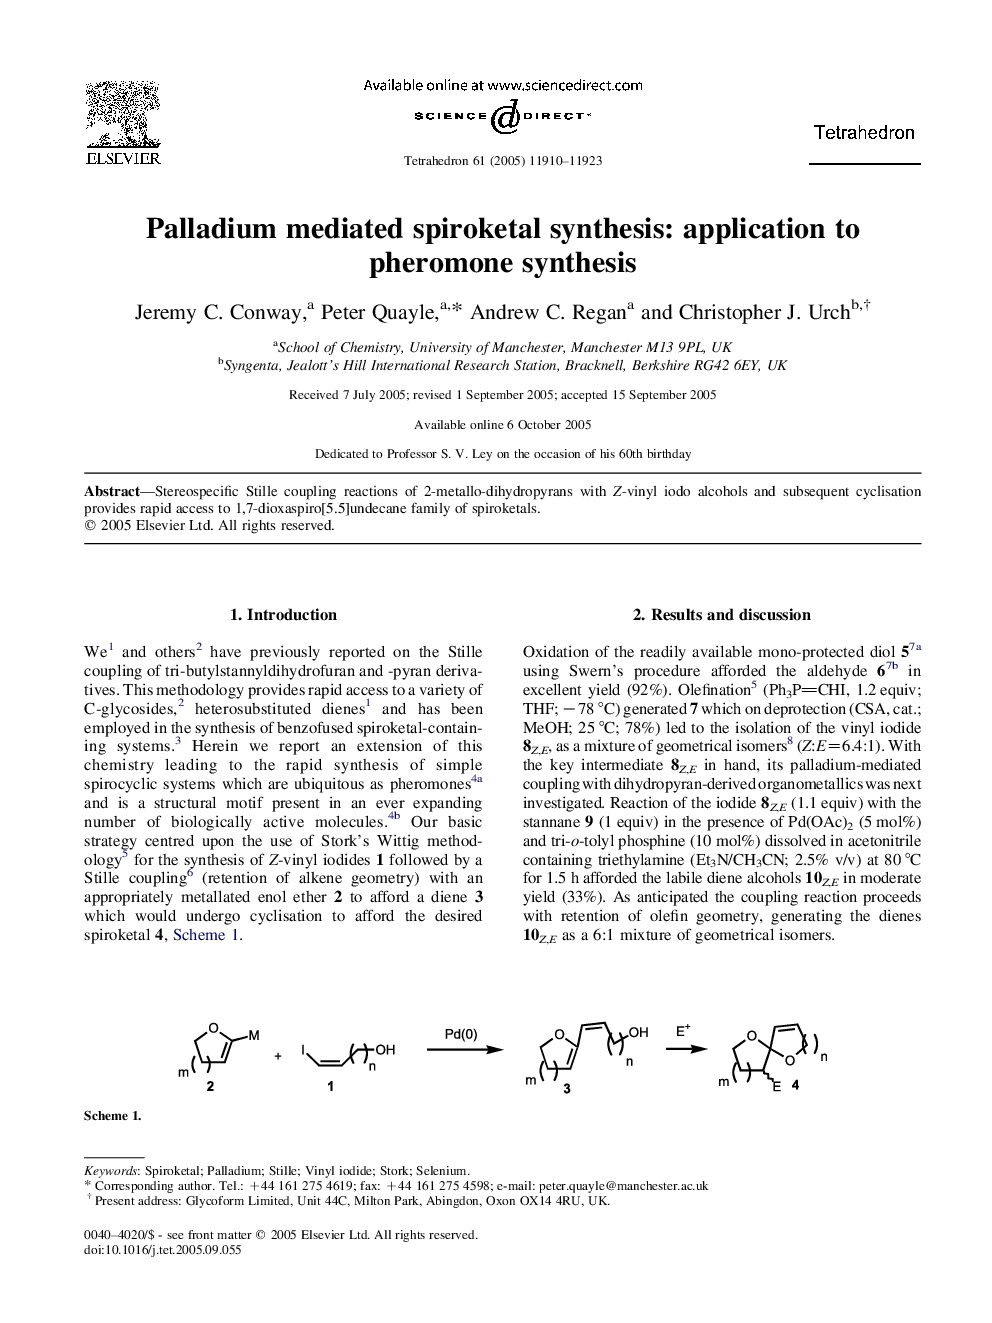 Palladium mediated spiroketal synthesis: application to pheromone synthesis